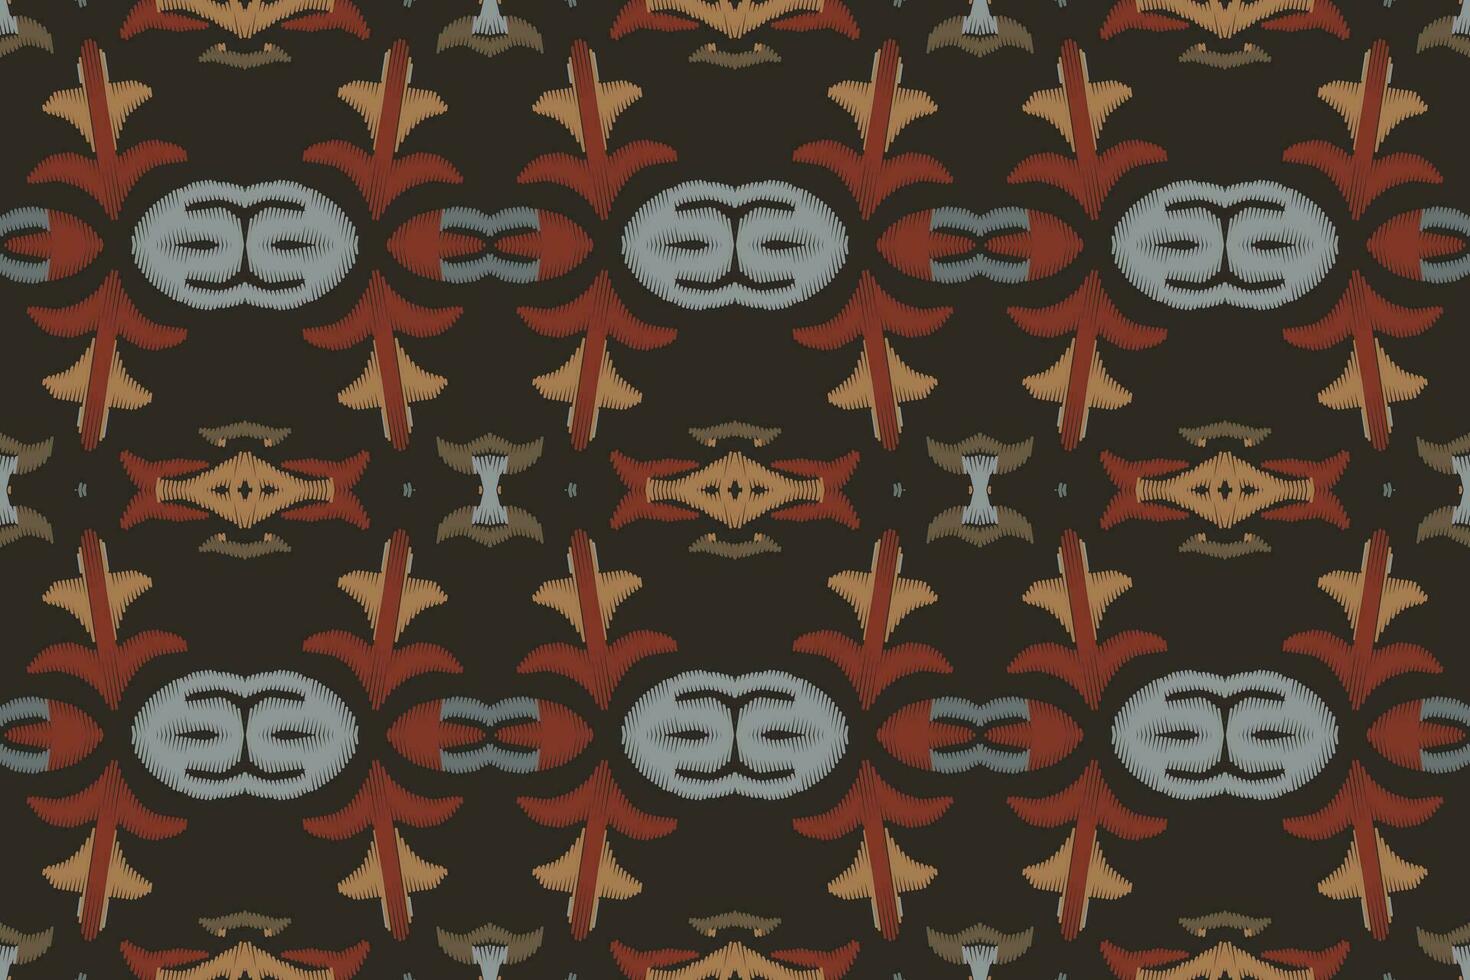 ikat damasco cachemir bordado antecedentes. ikat patrones geométrico étnico oriental modelo tradicional.azteca estilo resumen vector ilustración.diseño para textura,tela,ropa,envoltura,pareo.